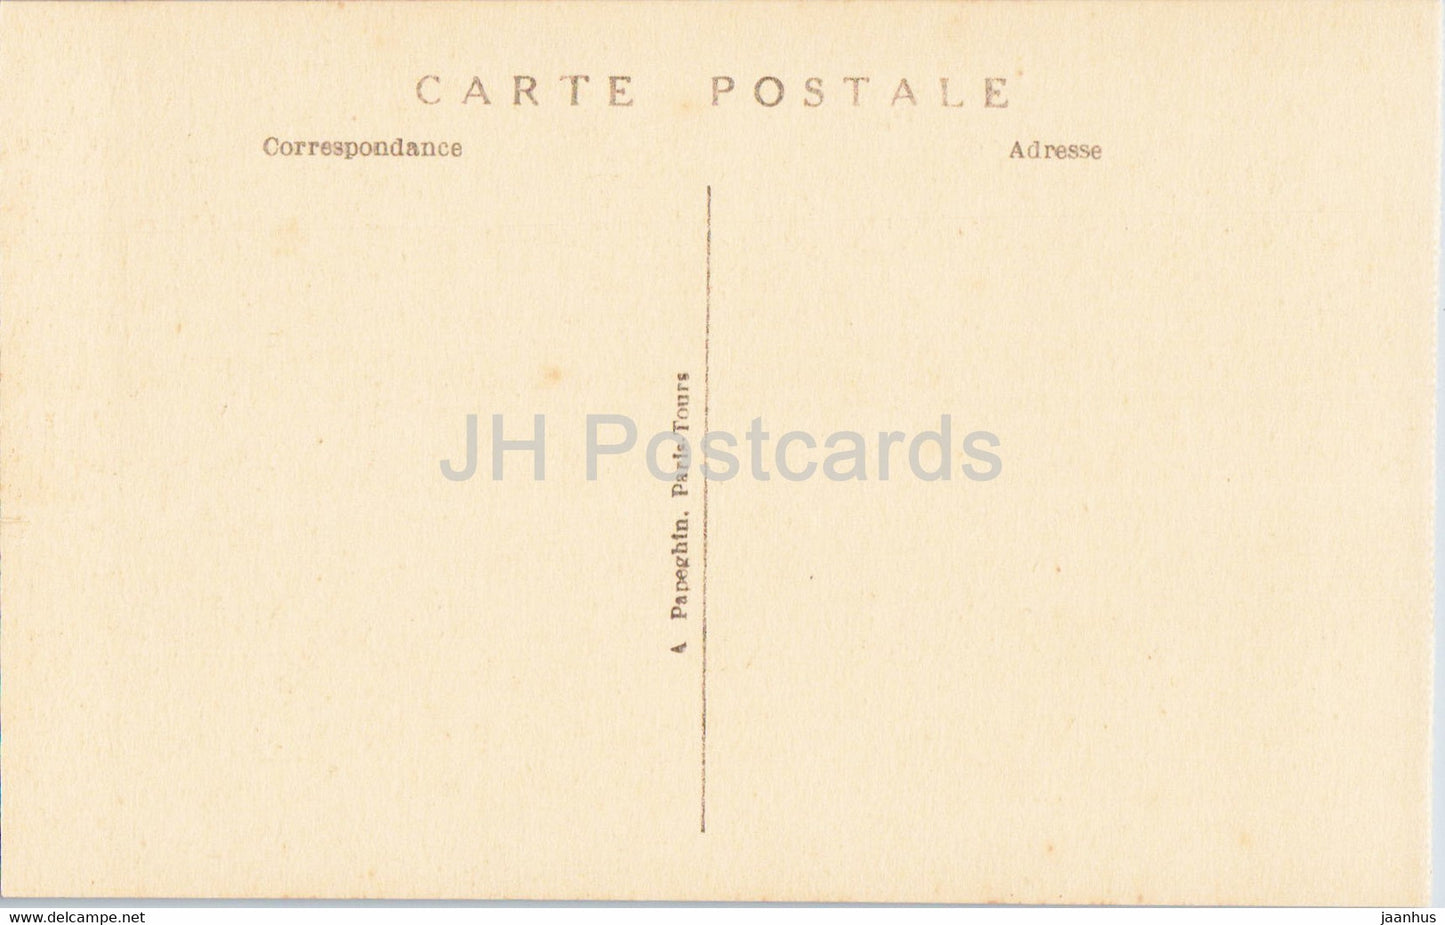 Versailles - Le Parc - Les Bains d'Apollon - 36 - old postcard - France - unused